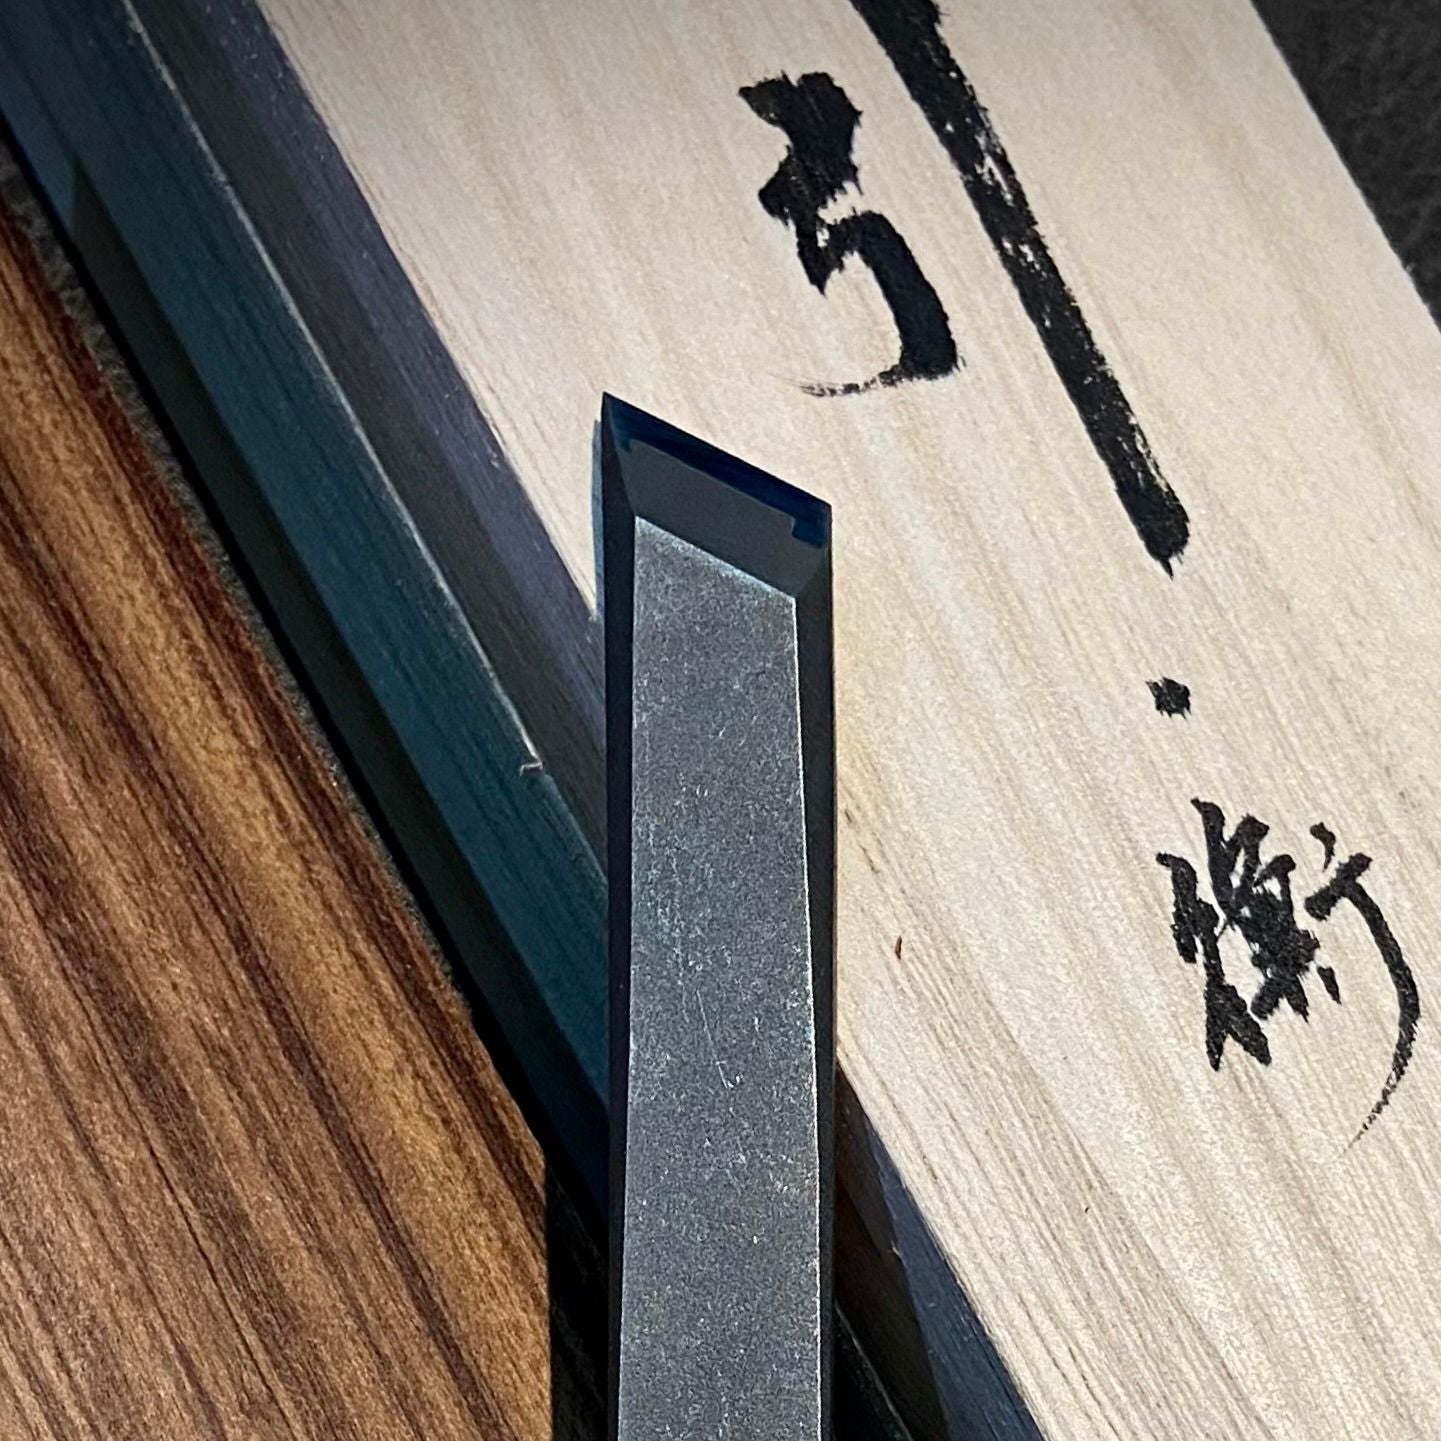 Zen-Wu Marking Knife